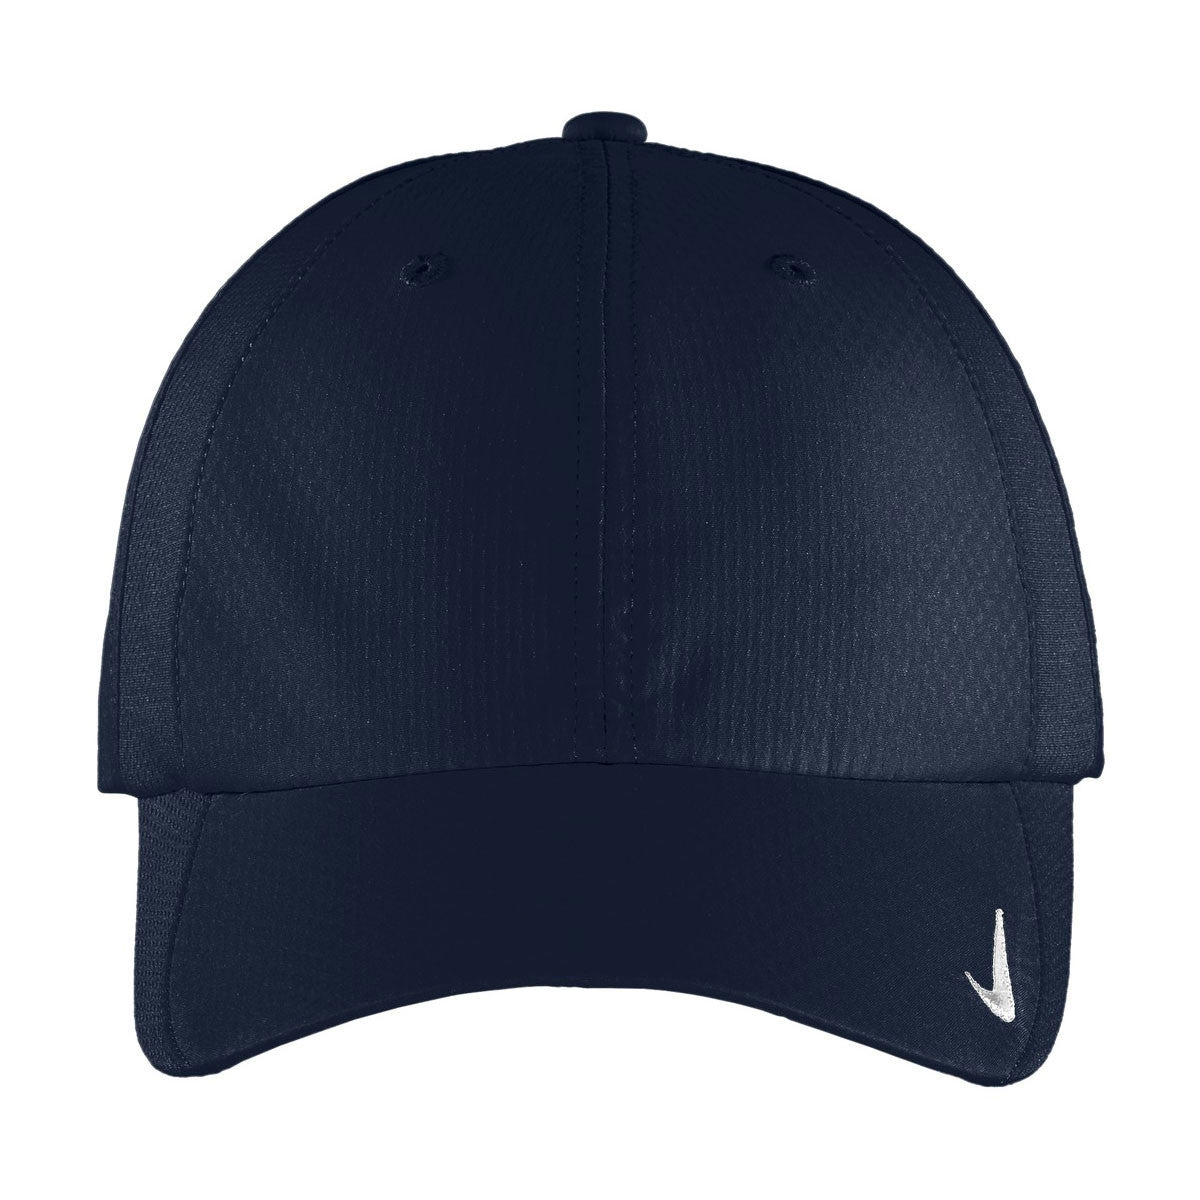 soltar Error No autorizado Nike Golf Navy Sphere Dry Cap